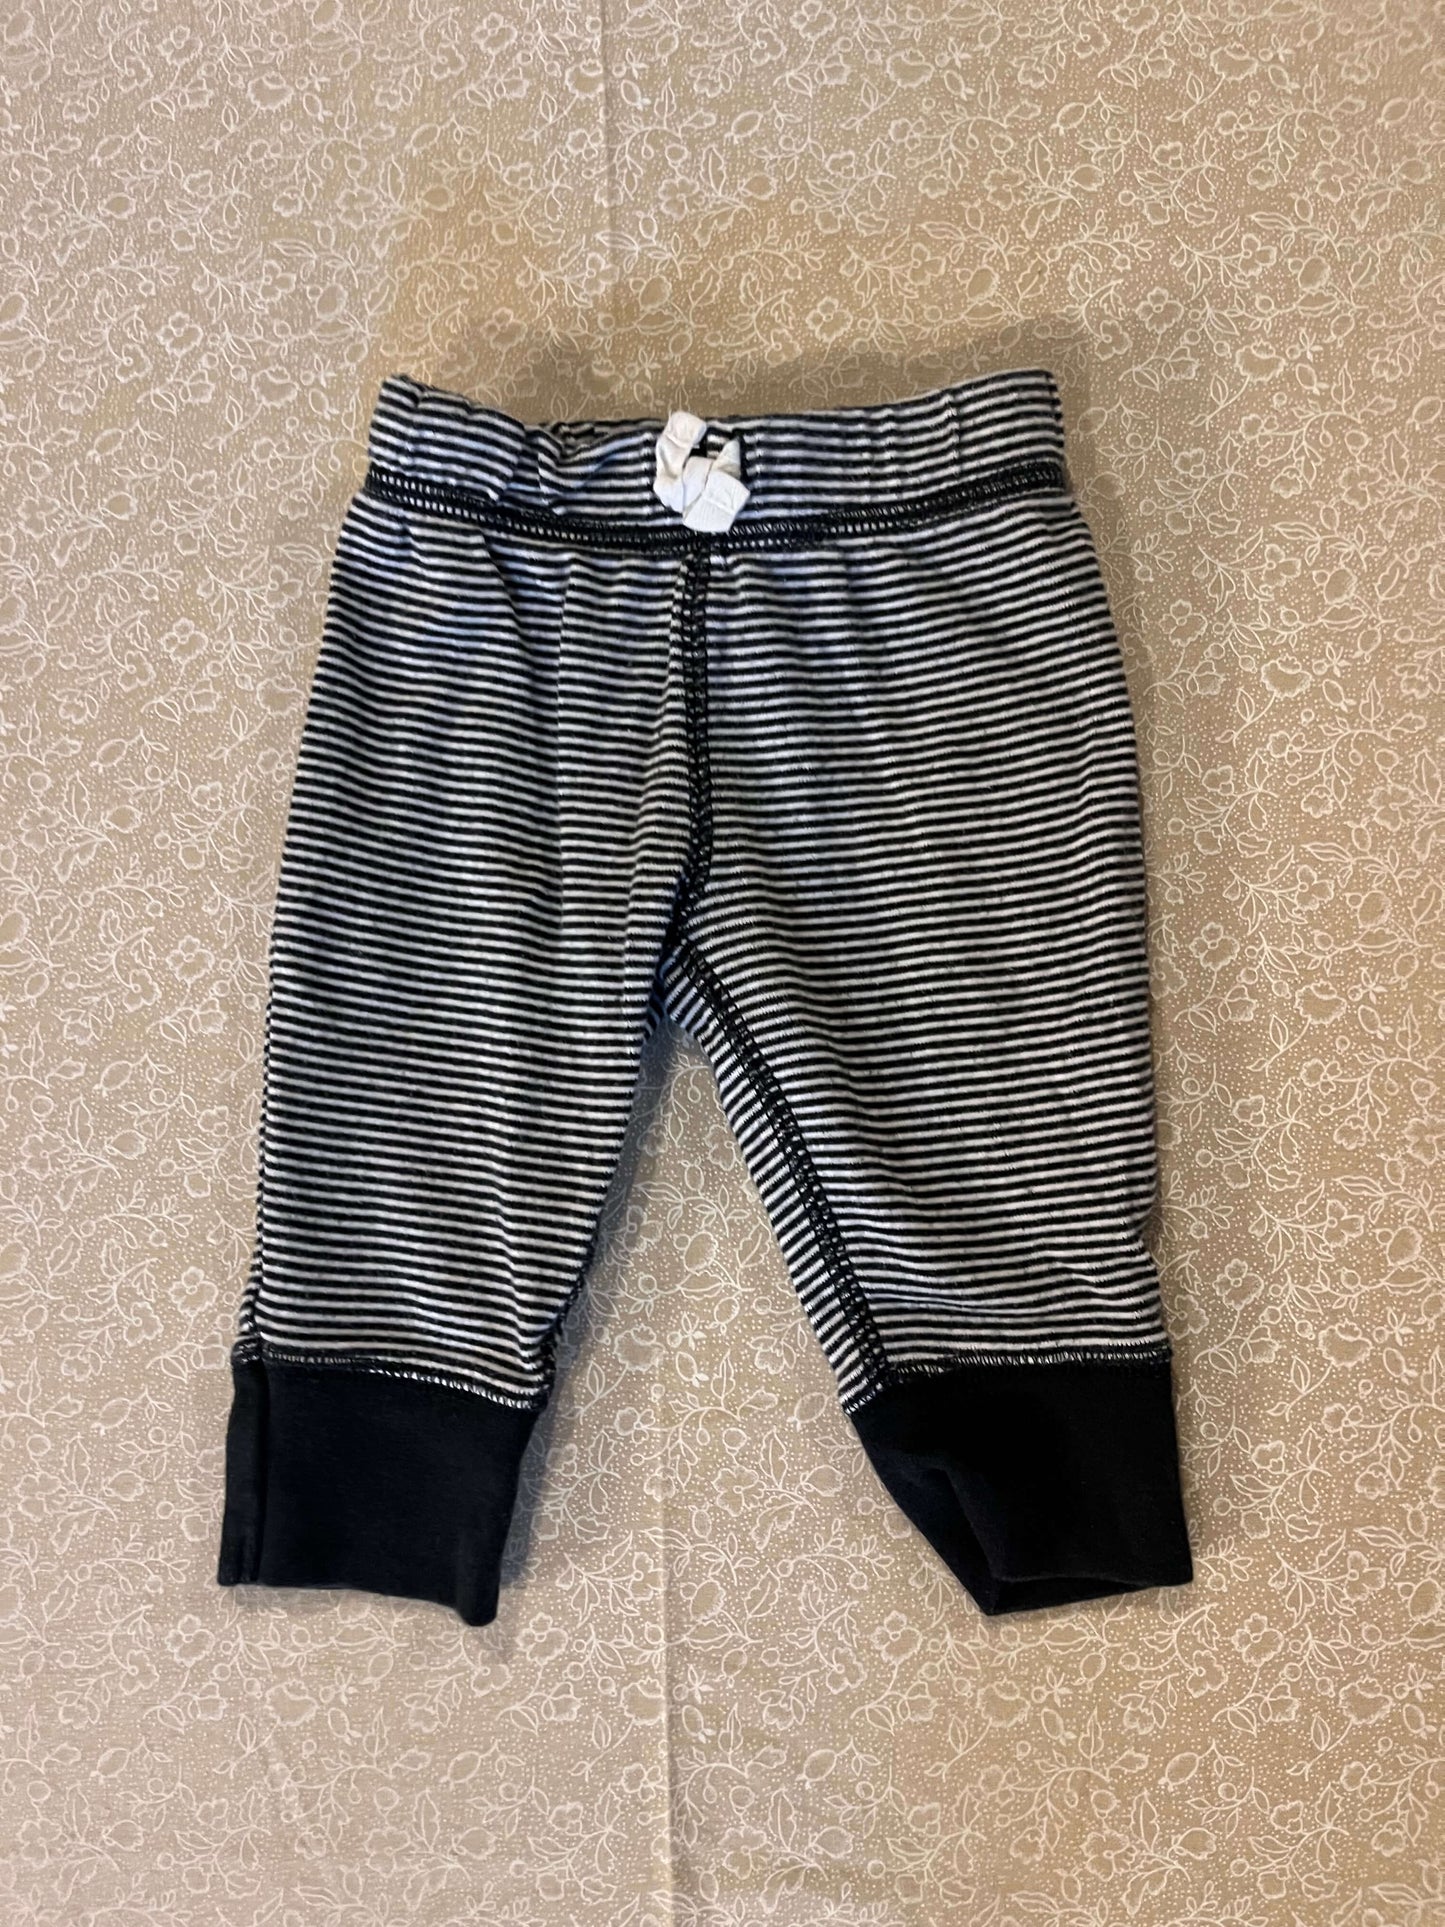 3-month-pants-carters-blue-stripes